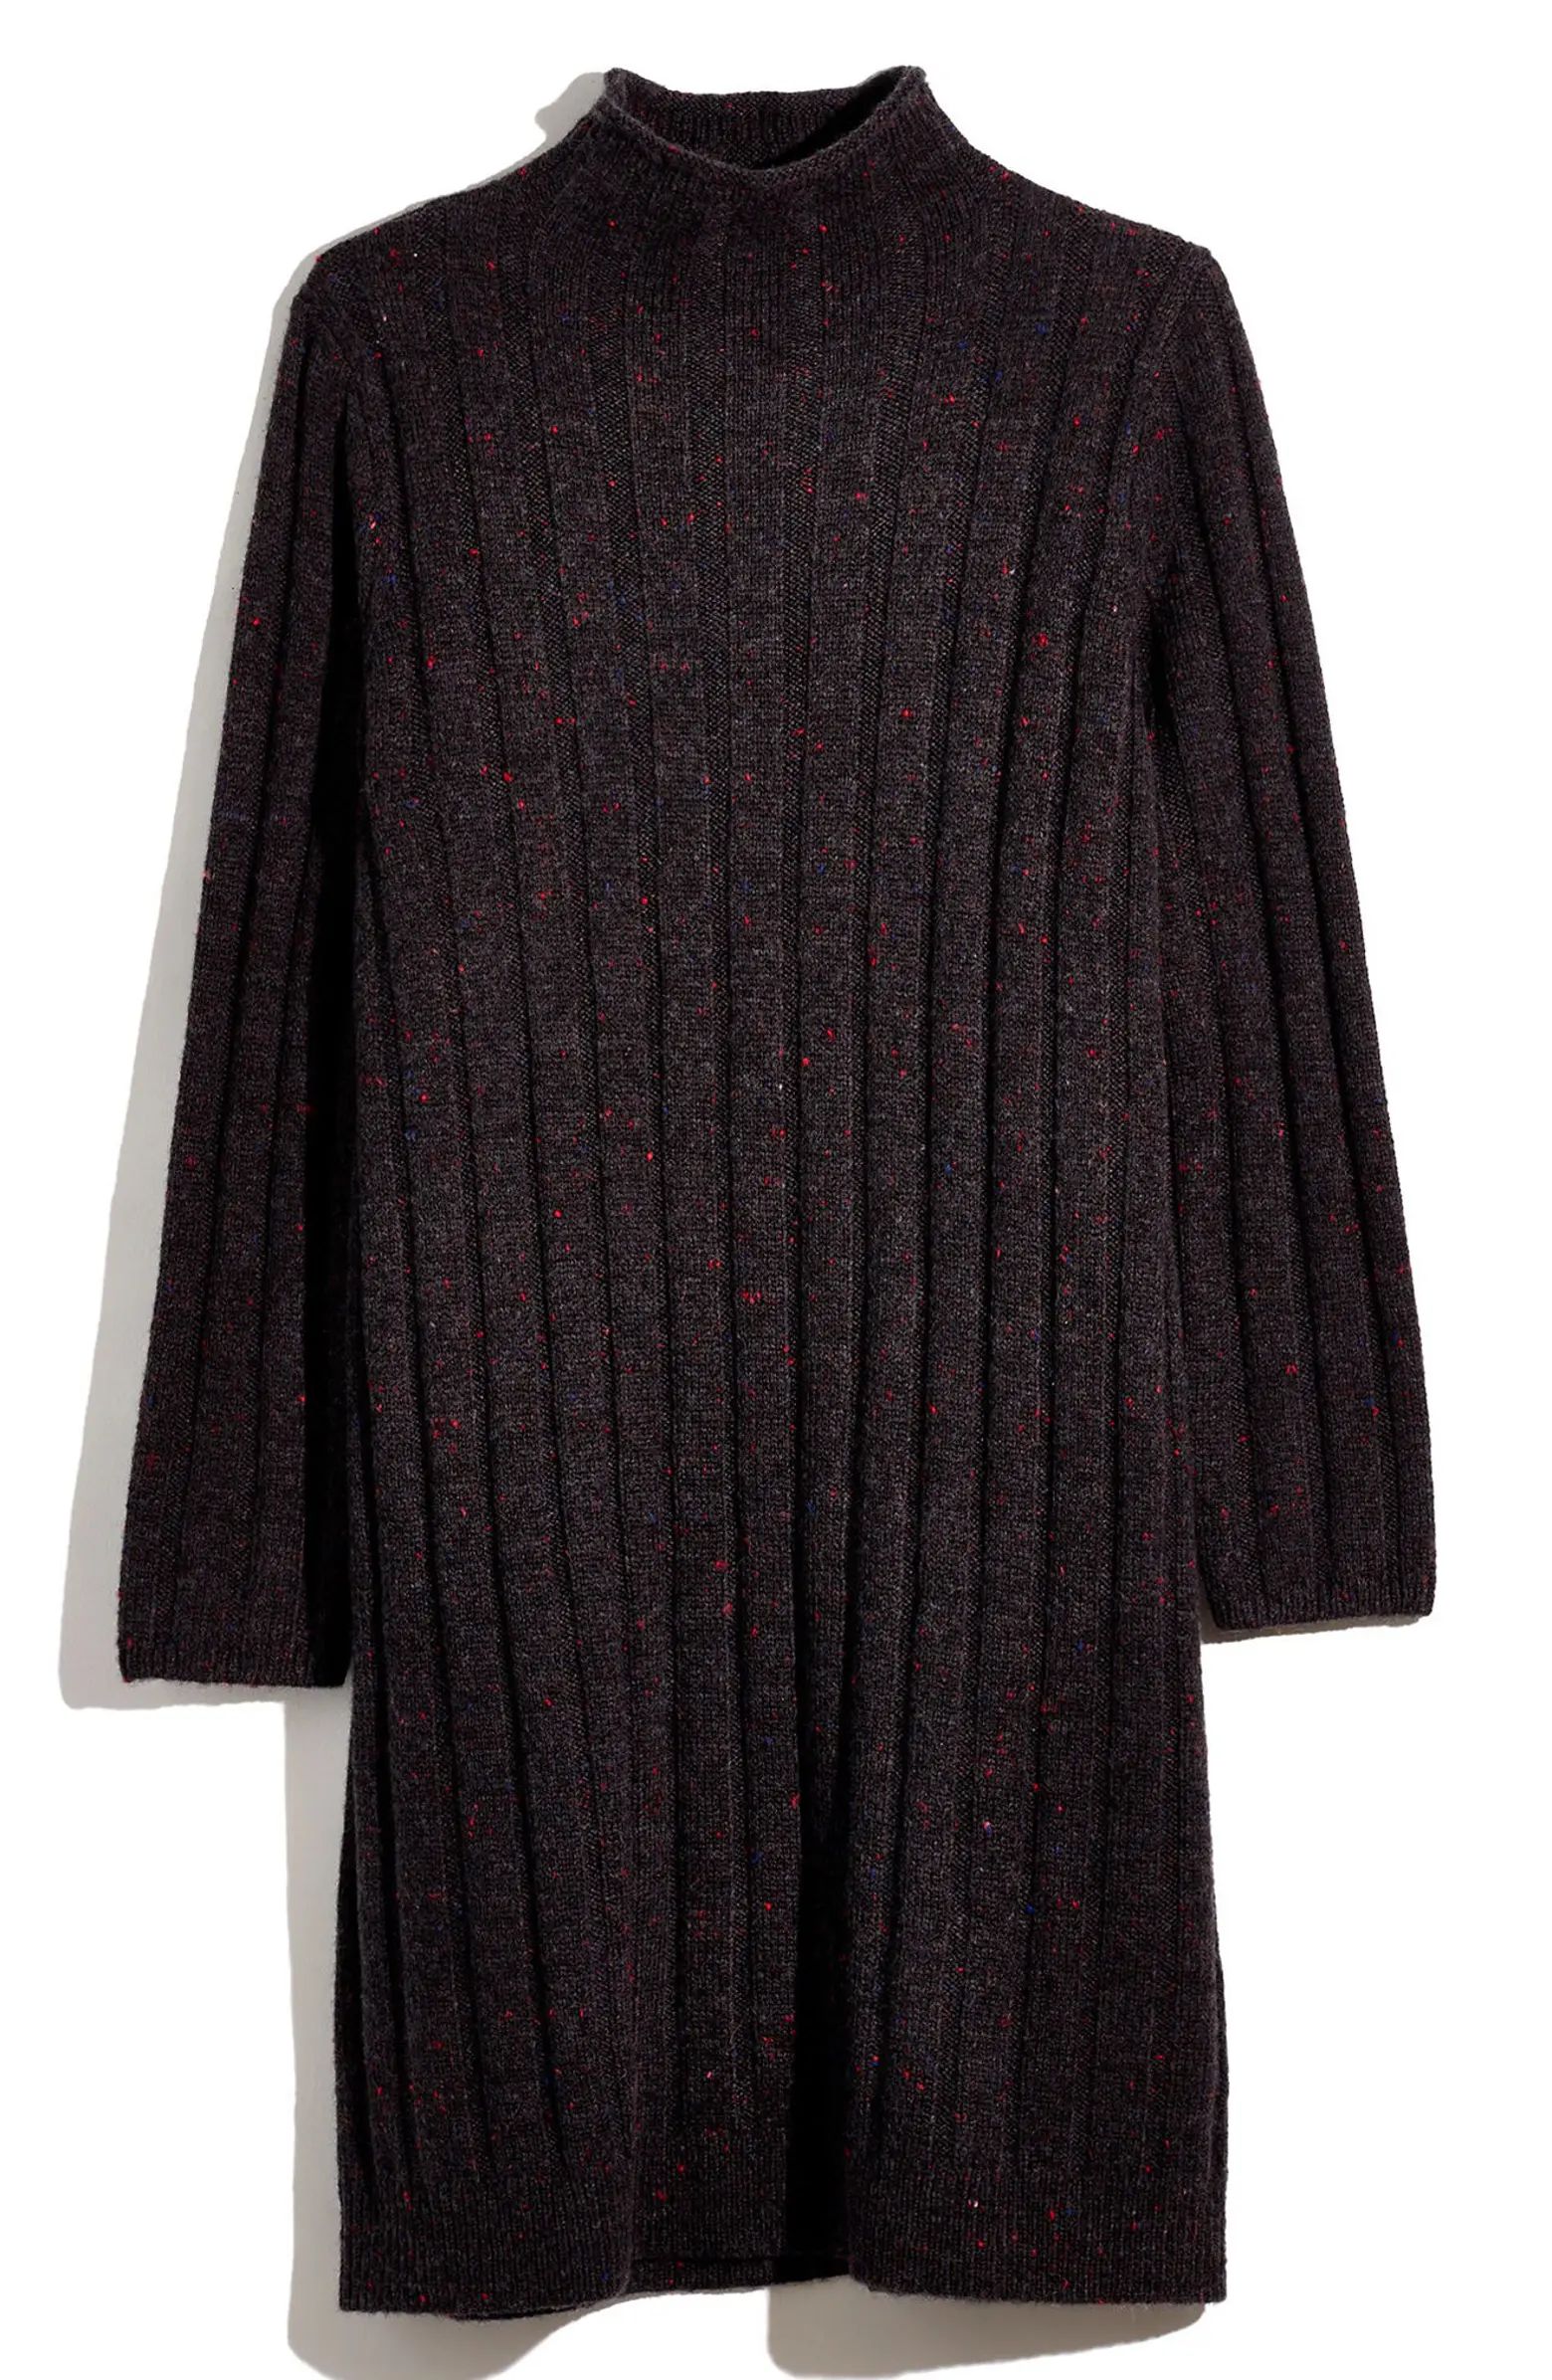 Donegal Rolled Mock Neck Sweater Dress | Nordstrom Rack